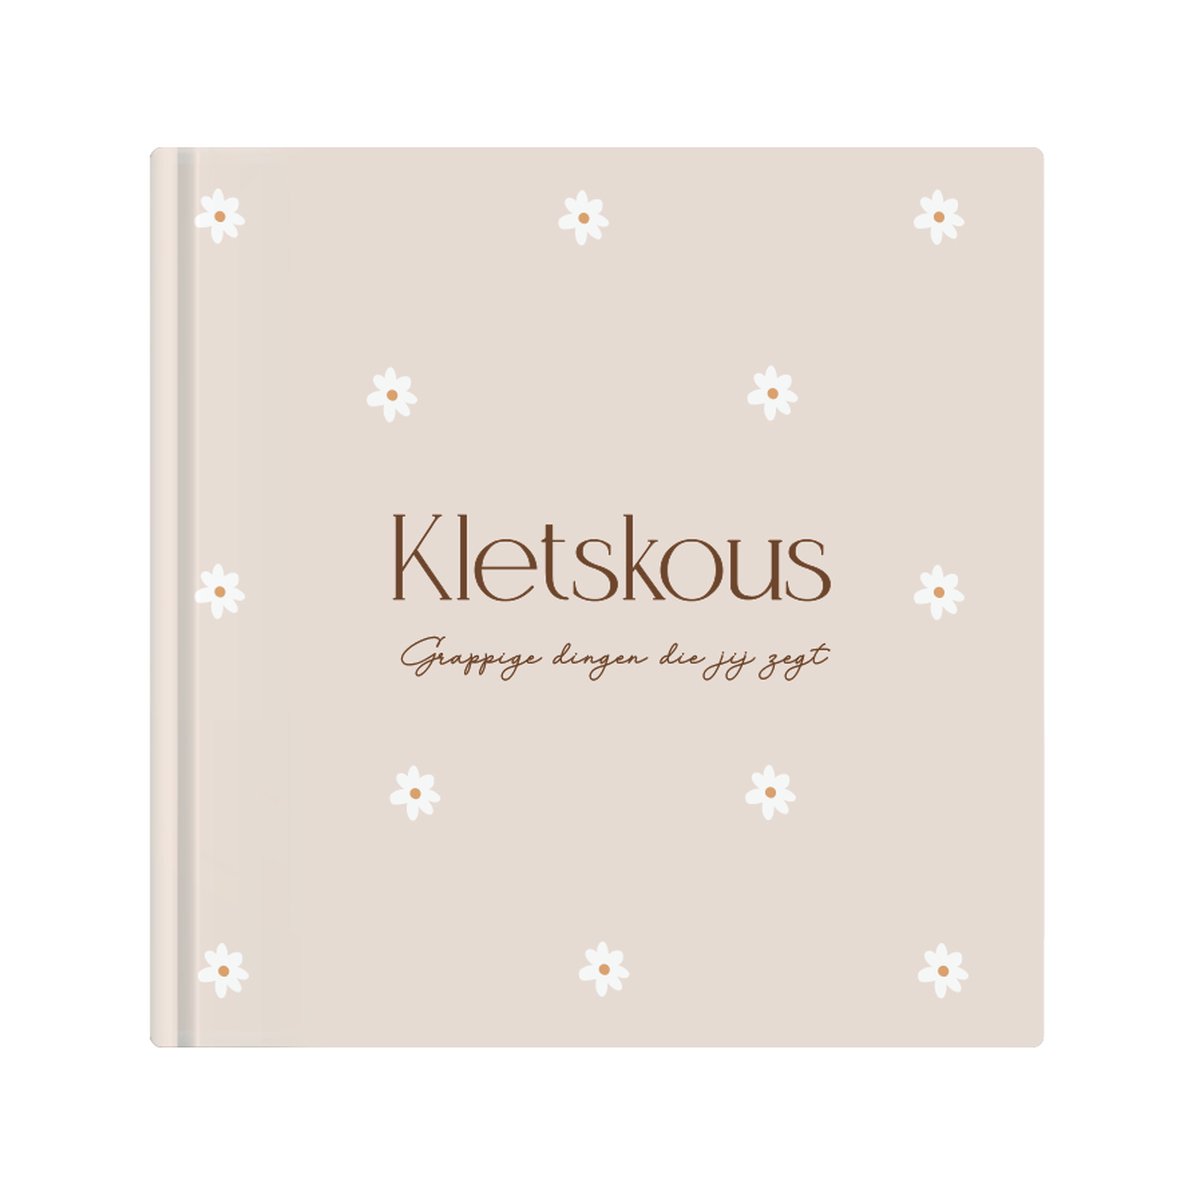 Writemoments - Uitsprakenboekje 'Kletskous' - madelief - uitsprakenboek - leuke uitspraken en grappige momenten - cadeau baby - invulboek eerste praatjes